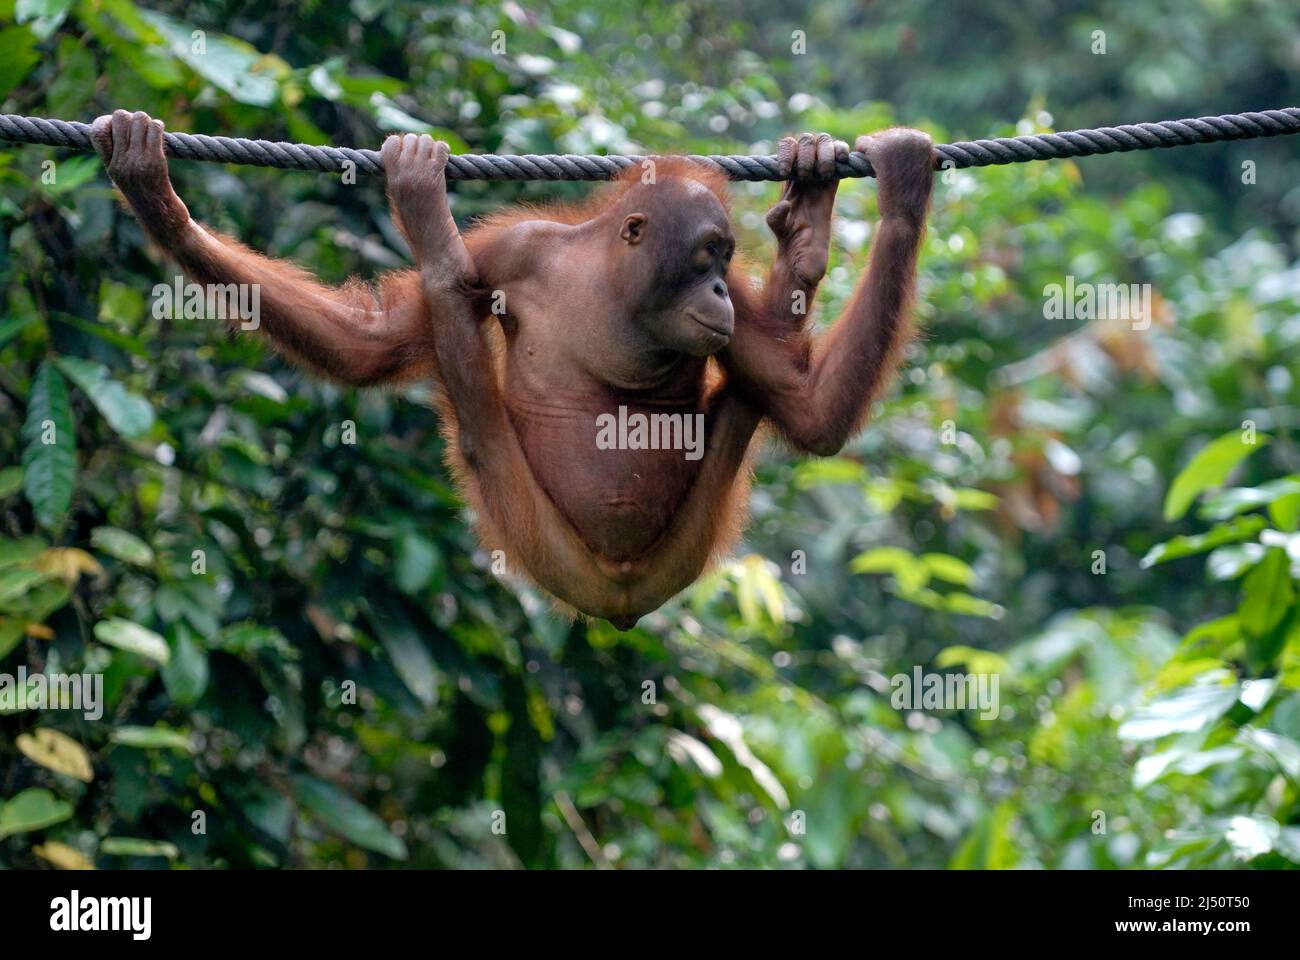 Orangutan playing at the Sepilok Orangutan Rehabilitation Centre. Stock Photo